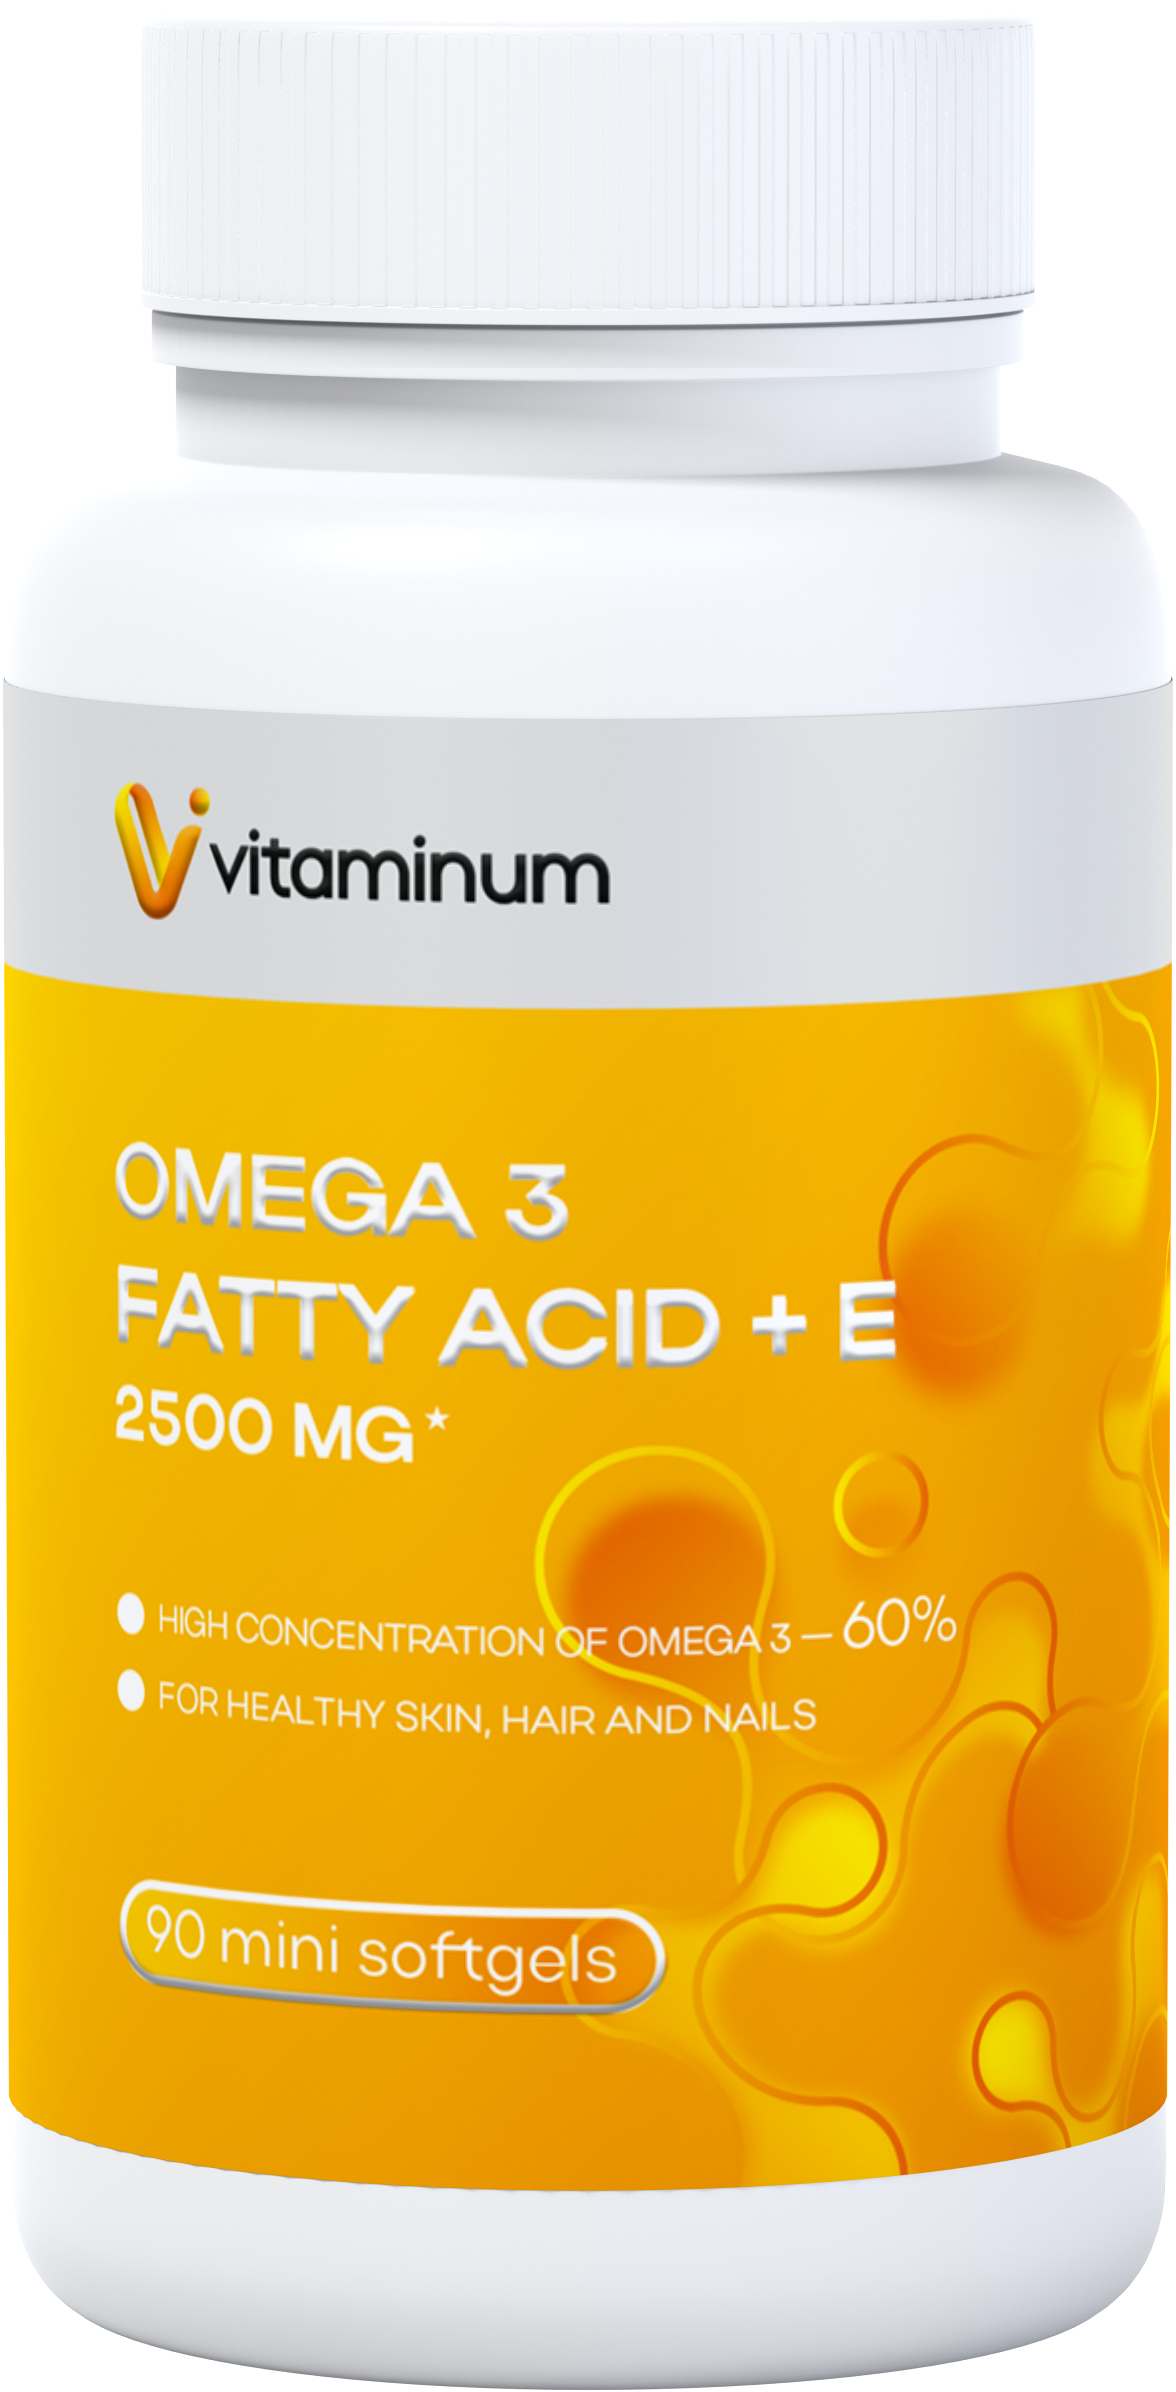  Vitaminum ОМЕГА 3 60% + витамин Е (2500 MG*) 90 капсул 700 мг   в Владивостоке